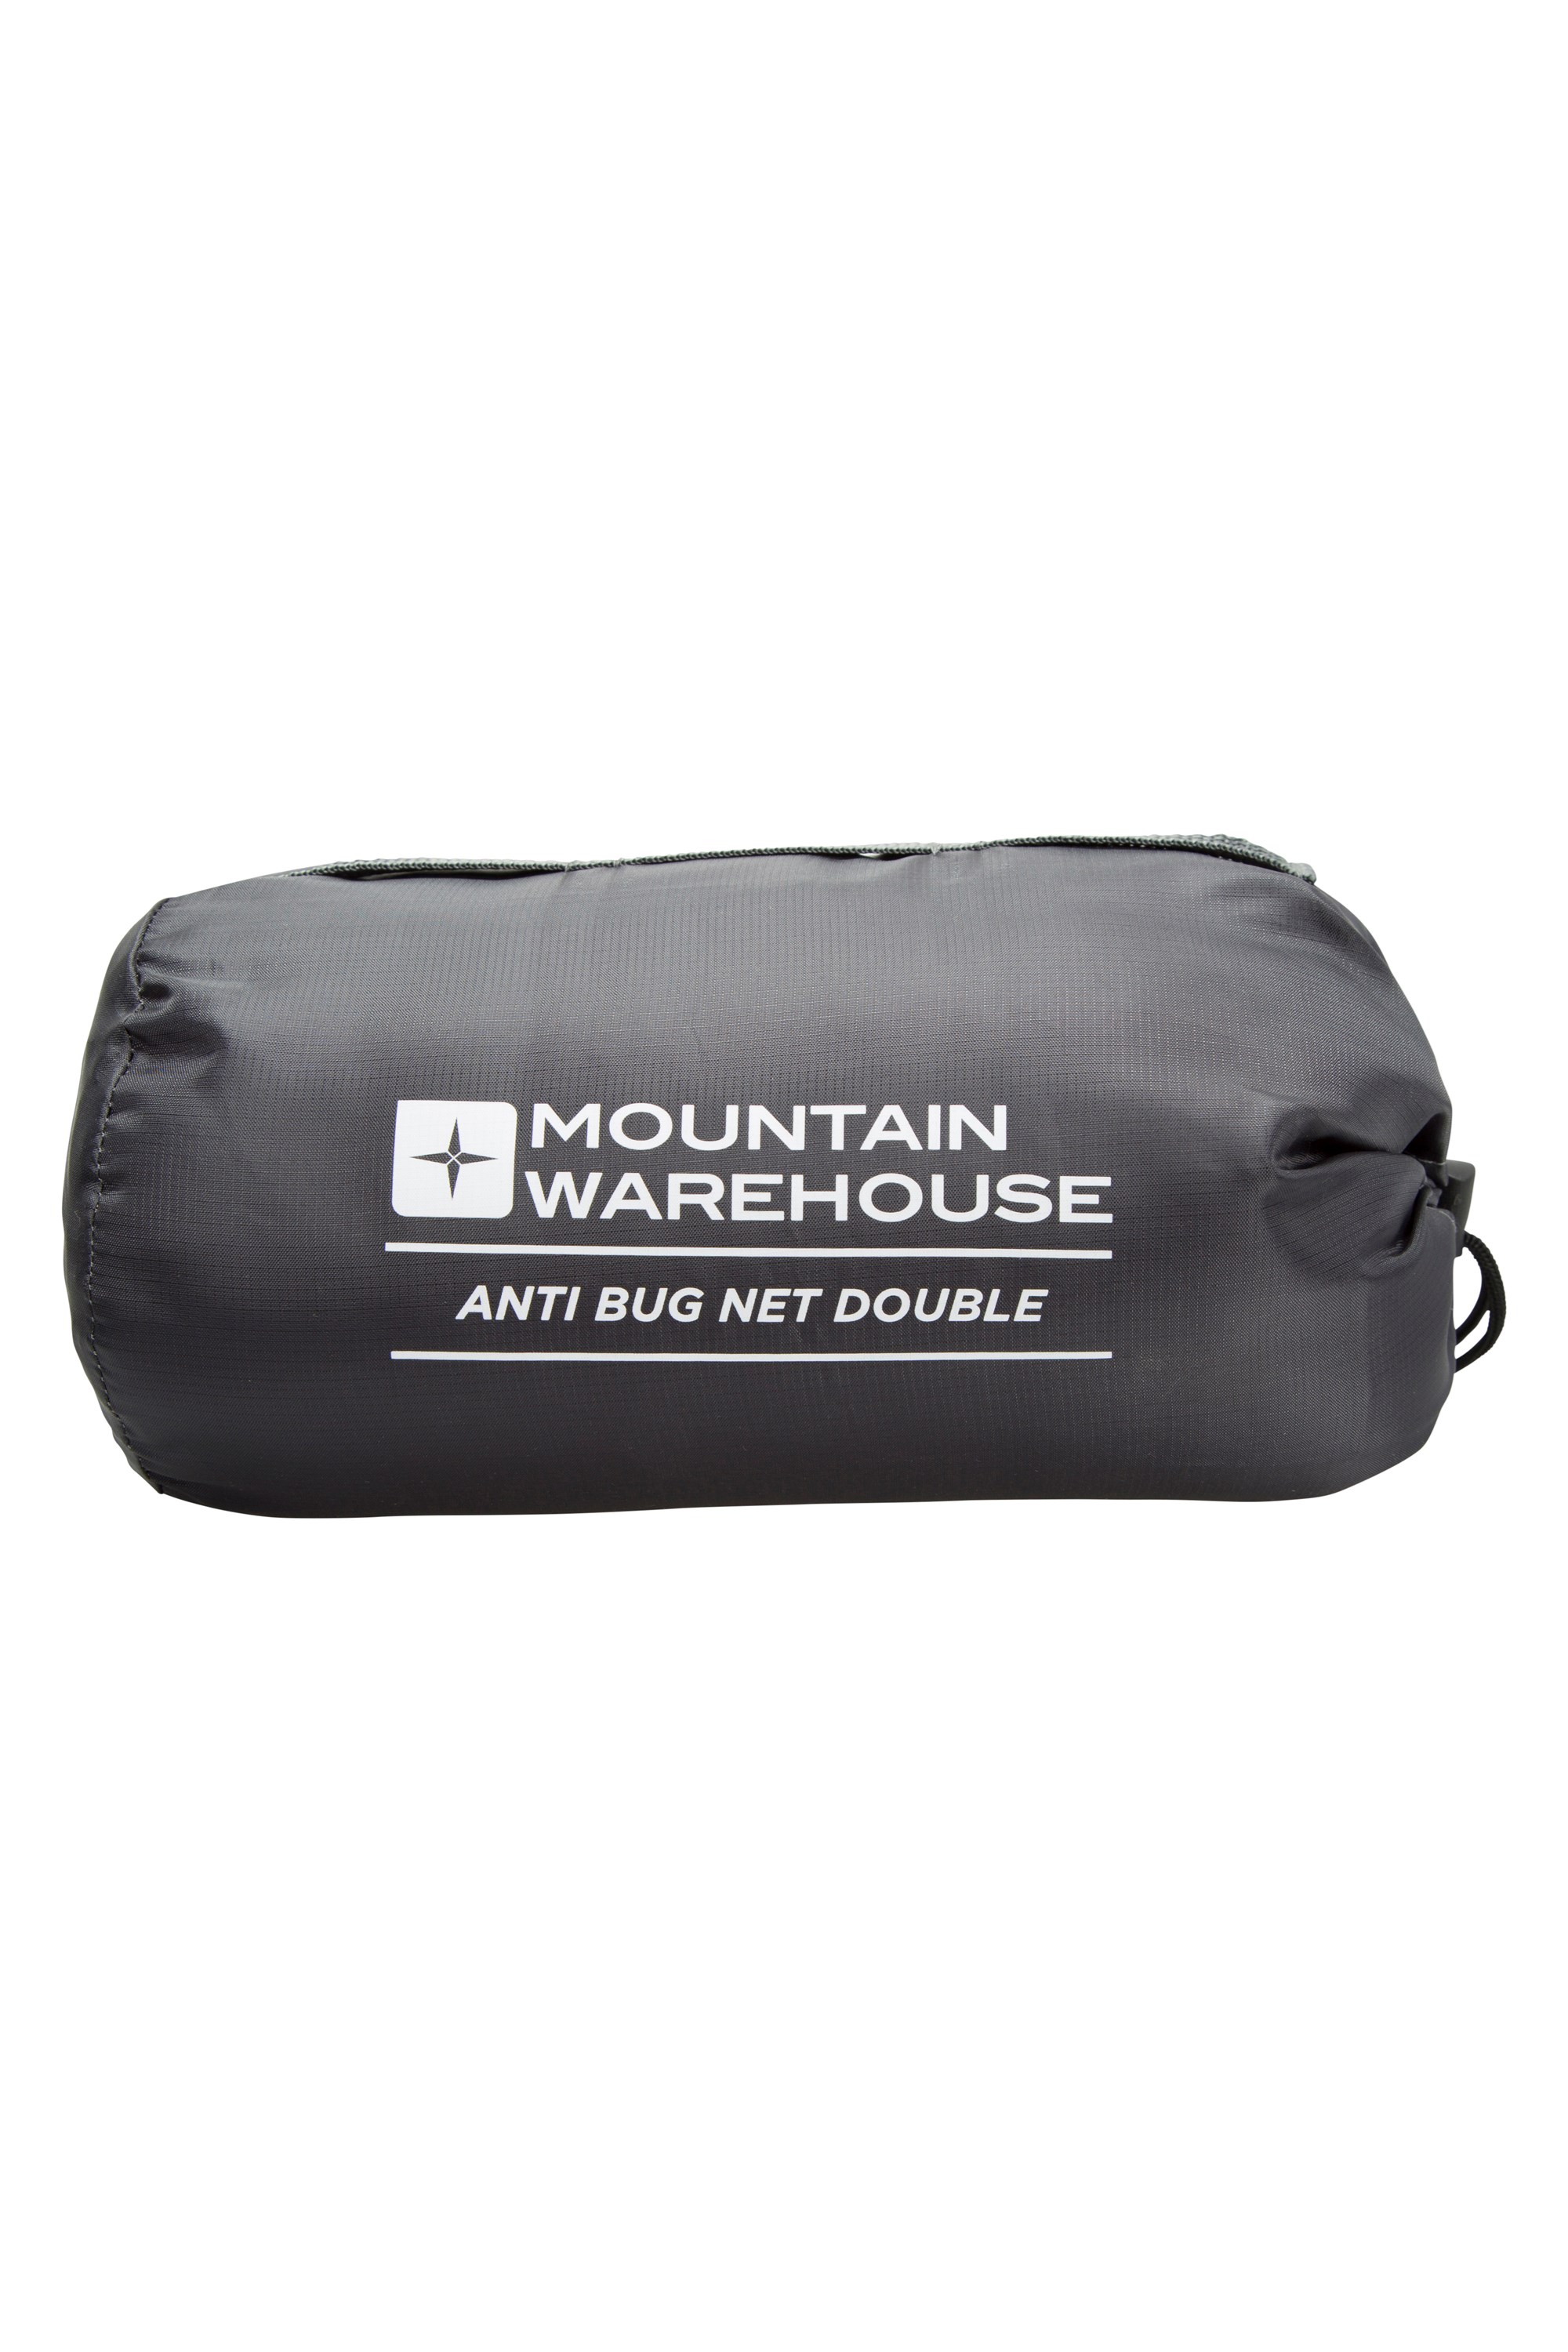 Mountain Warehouse Anti Mosquito Net Double White